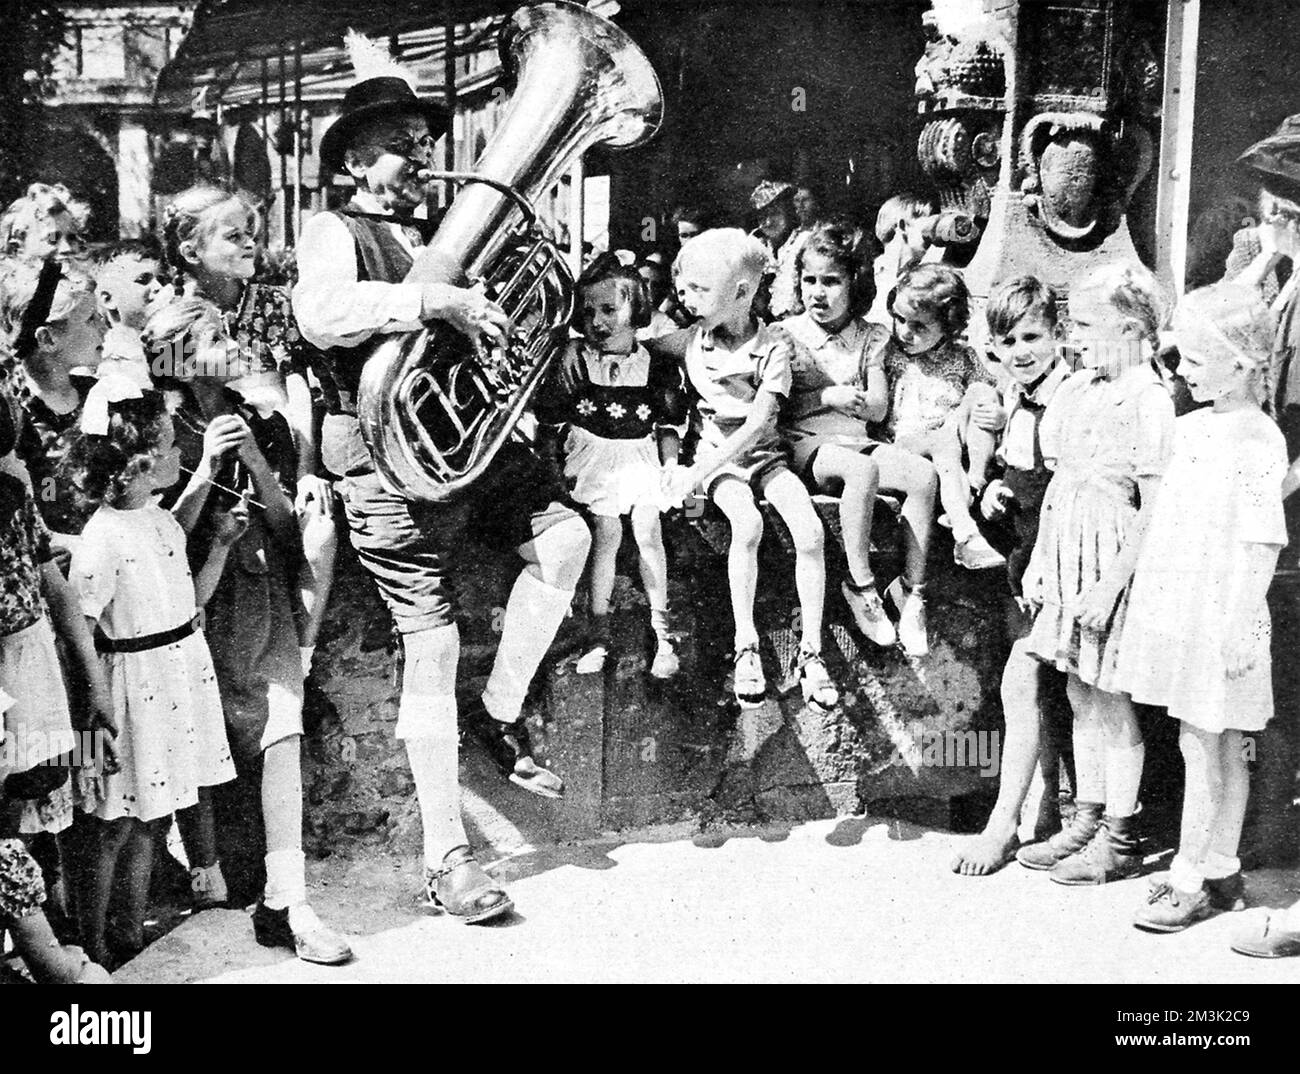 Eine Gruppe von Kindern hört einem Mann zu, der in Berlin Tuba spielt, kurz nach dem Ende des Zweiten Weltkriegs in Europa, August 1945. Datum: 1945 Stockfoto